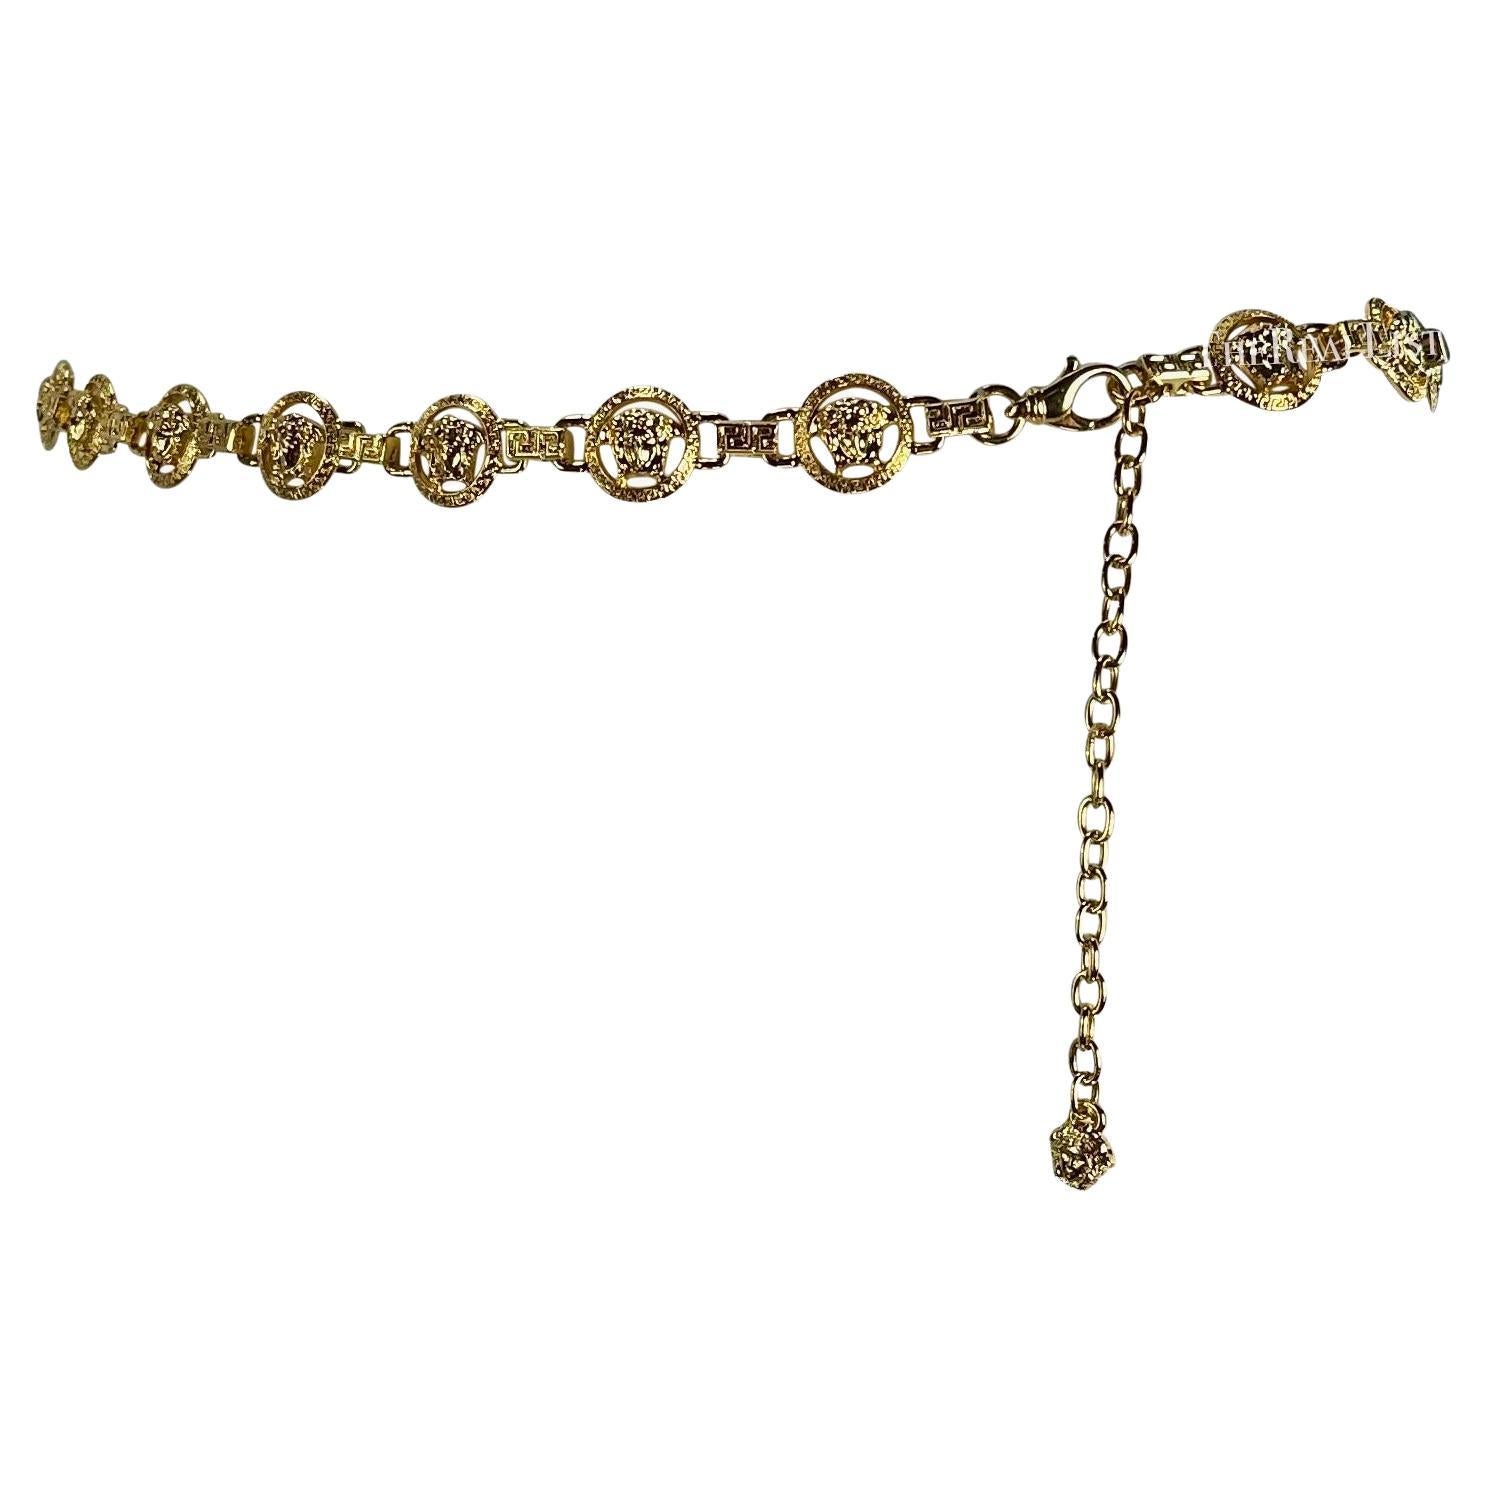 Nous vous présentons une incroyable ceinture à chaîne Gianni Versace en métal doré, créée par Donatella Versace. Datant du début des années 2000, cette ceinture chic est construite avec des maillons à logo Versace Medusa en tons dorés. Cette